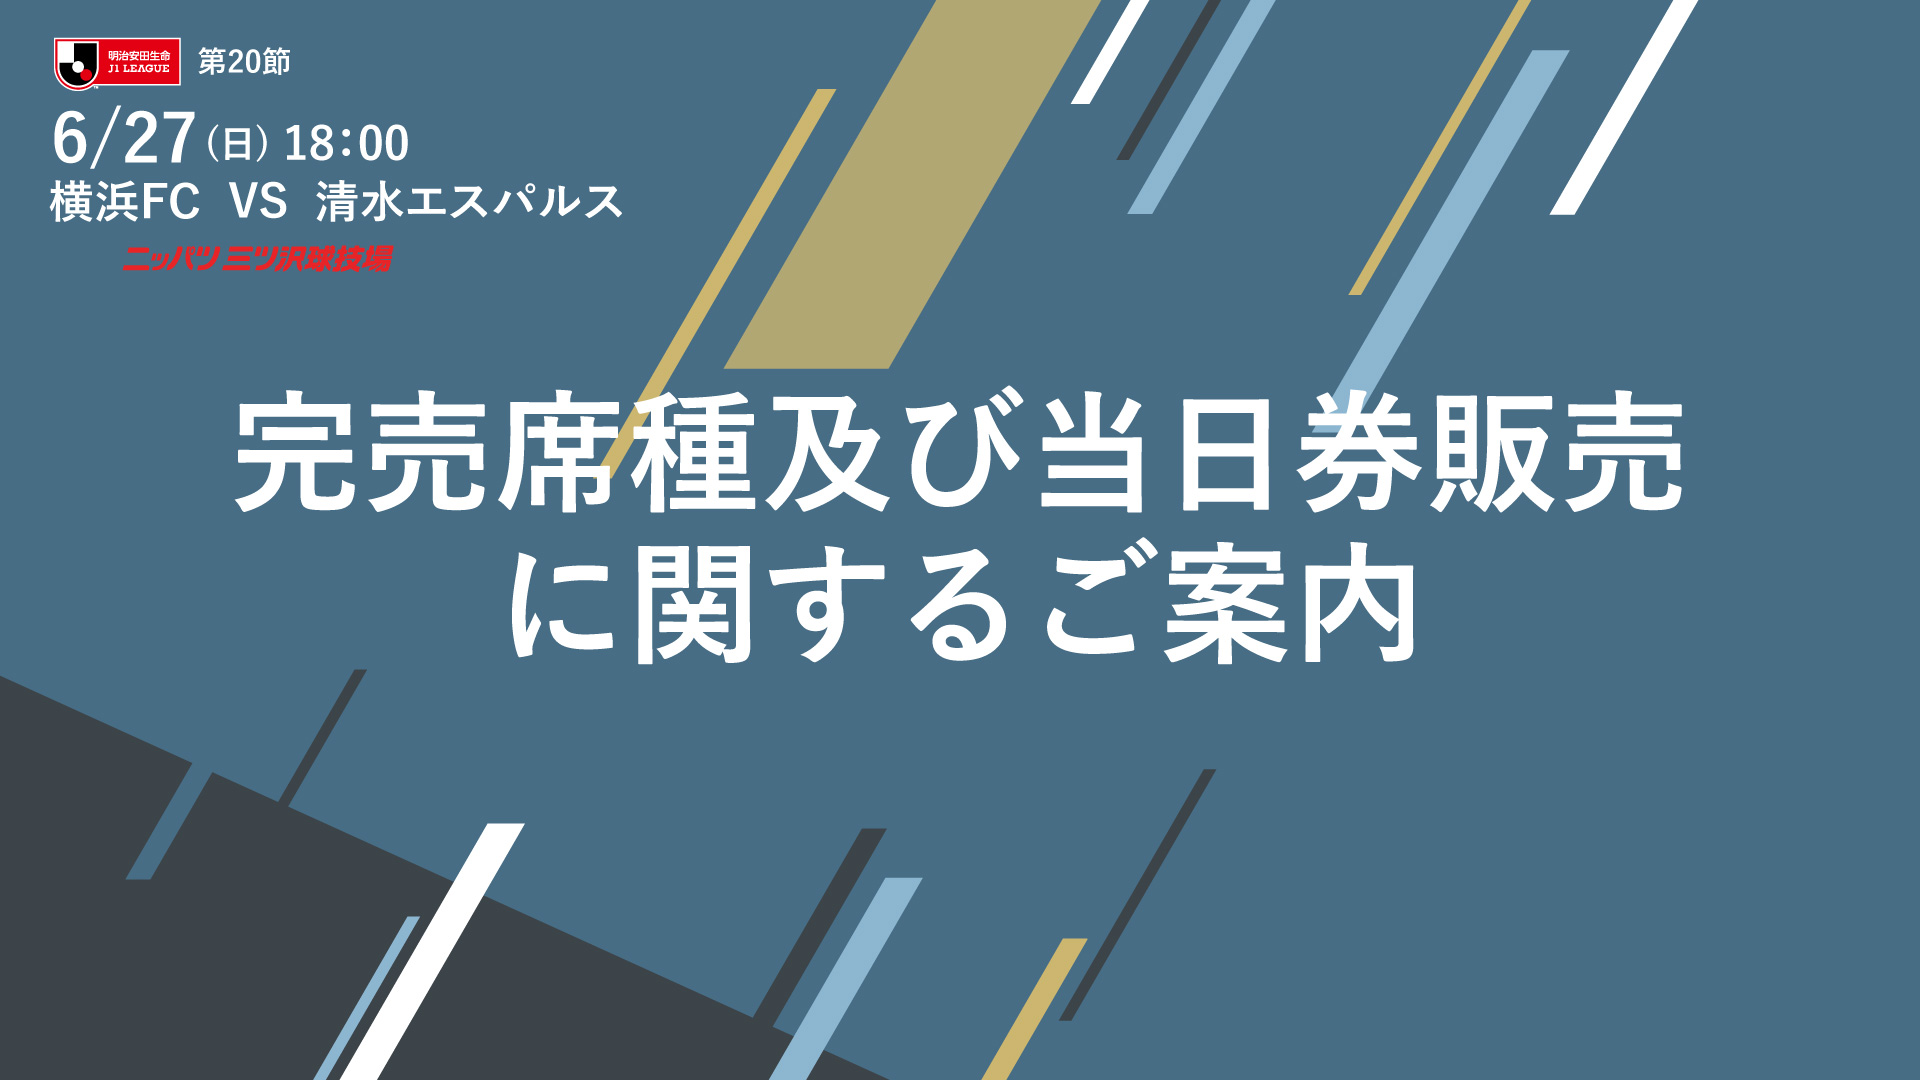 6 27 日 清水エスパルス戦 完売席種及び当日券販売に関するご案内 横浜fcオフィシャルウェブサイト